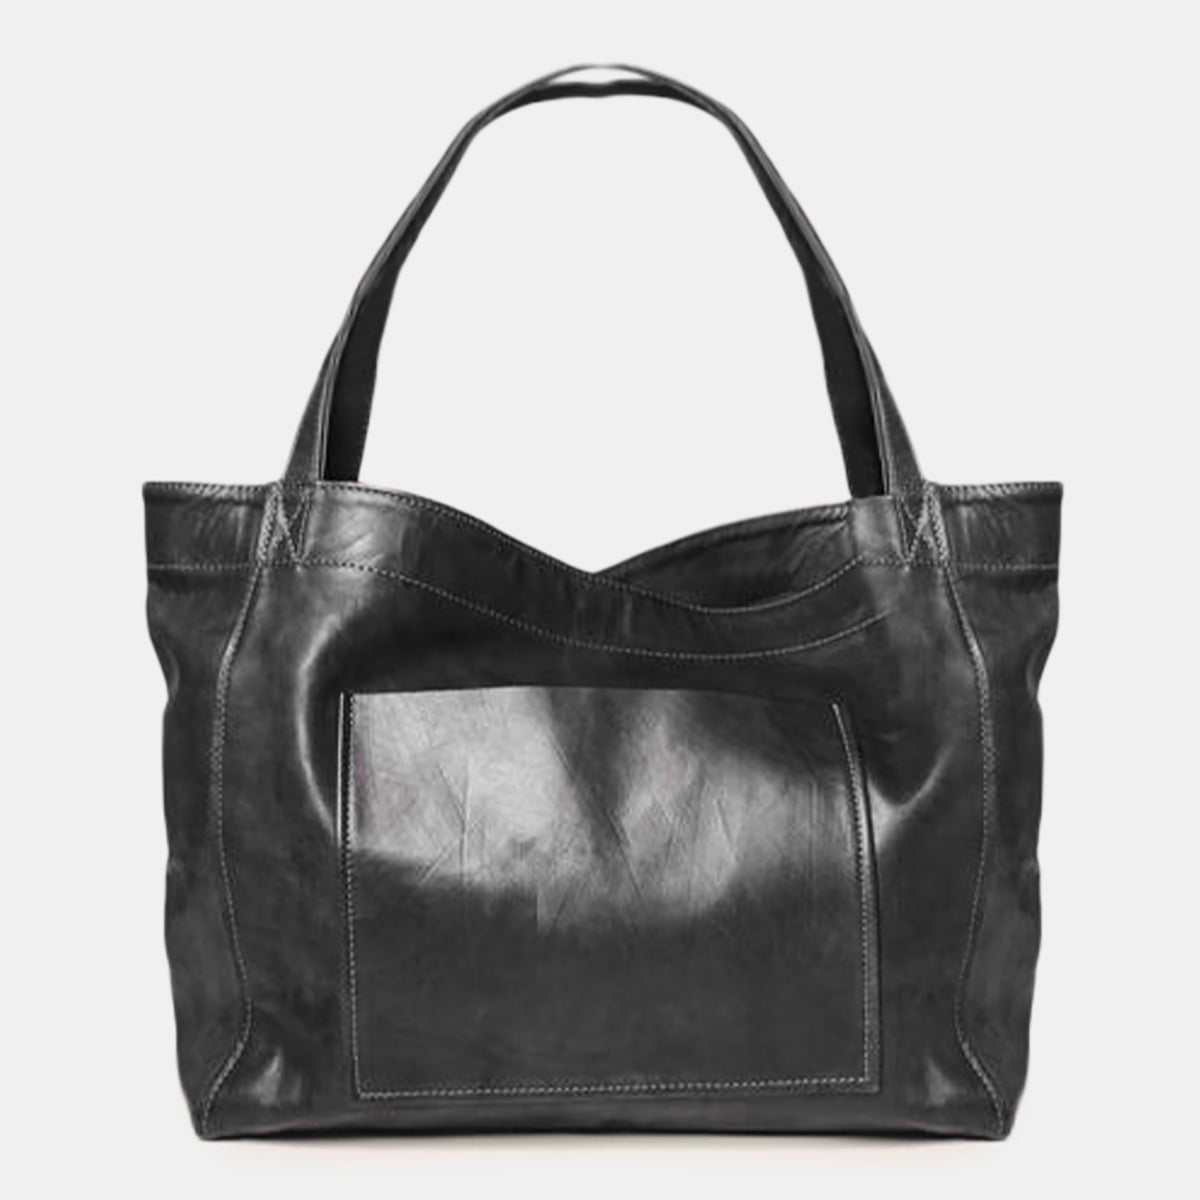 Cat Shopping Tote Bag Big Canvas Handbag Shoulder Crossbody Bag Portable JH 